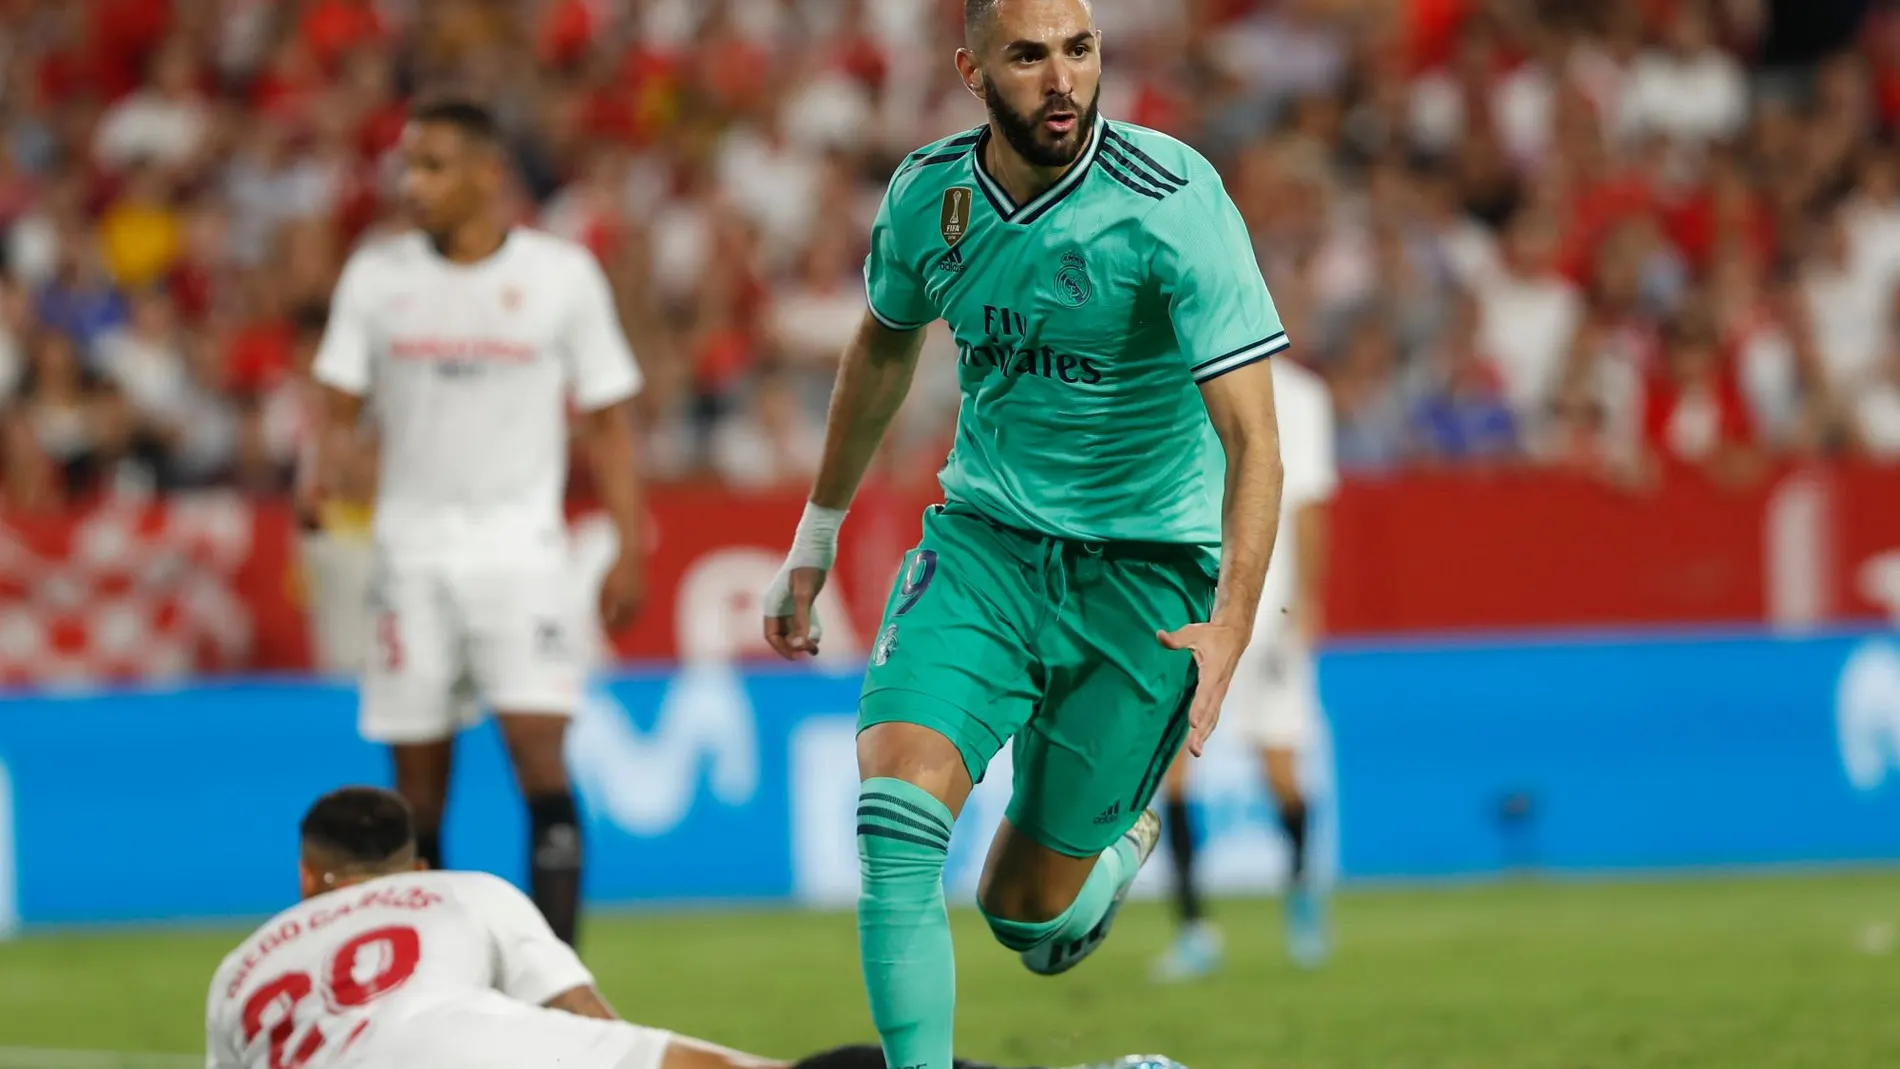 Karim Benzema celebrando su gol ante el Sevilla en el Pizjuán / Ap